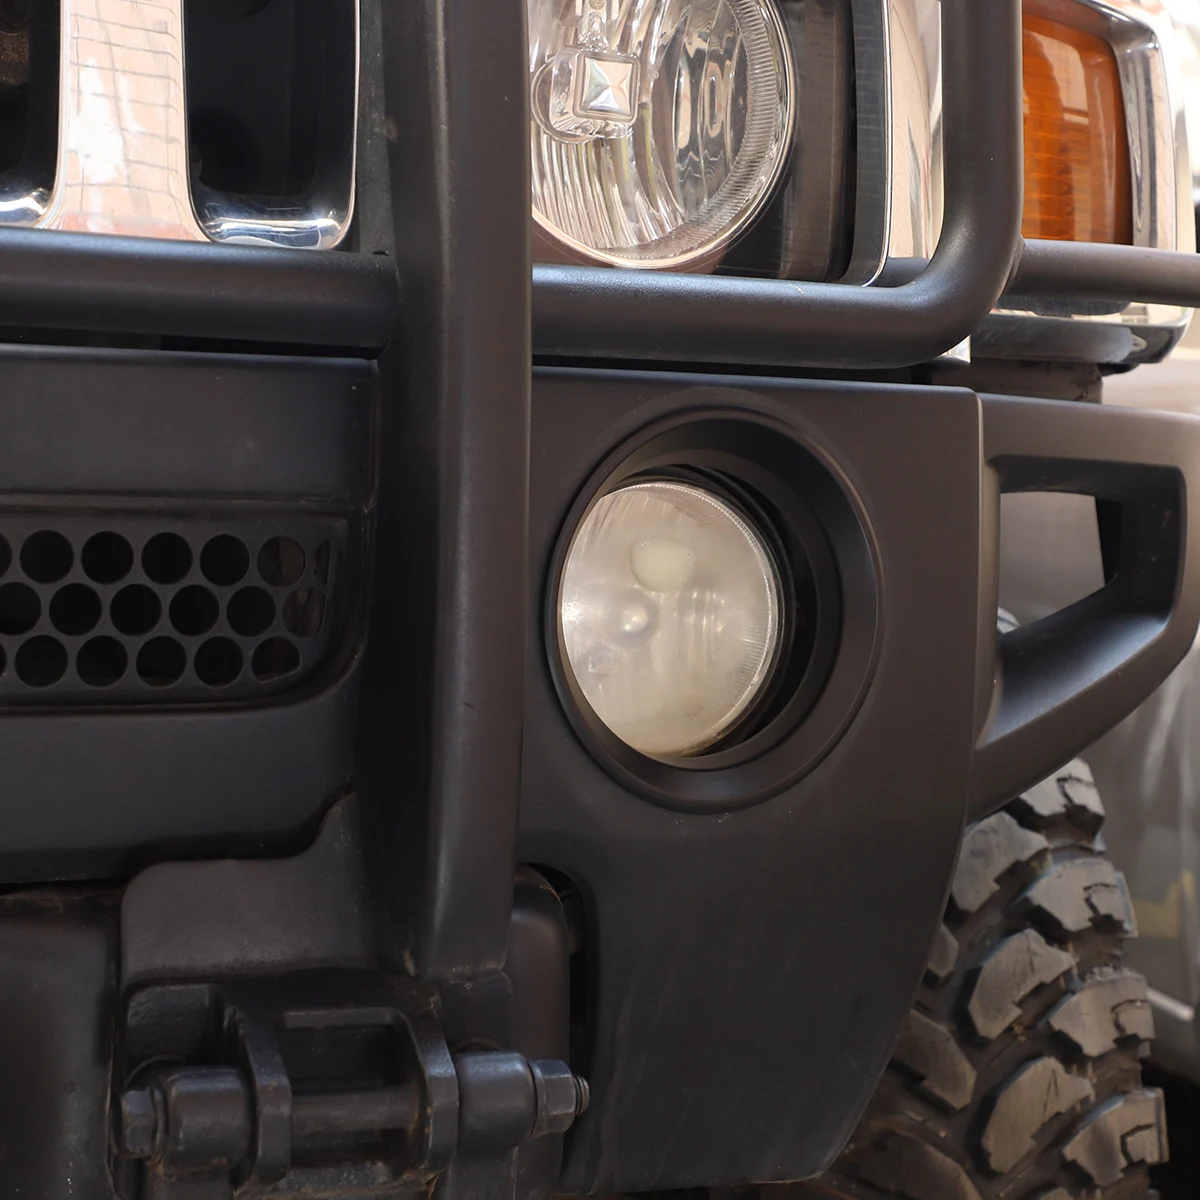 על האמר H3 2005-2009 ABS בהיר/שחור מט לרכב לפני אור ערפל מסגרת המנורה טבעת כיסוי לקצץ מדבקה אביזרי רכב - 3